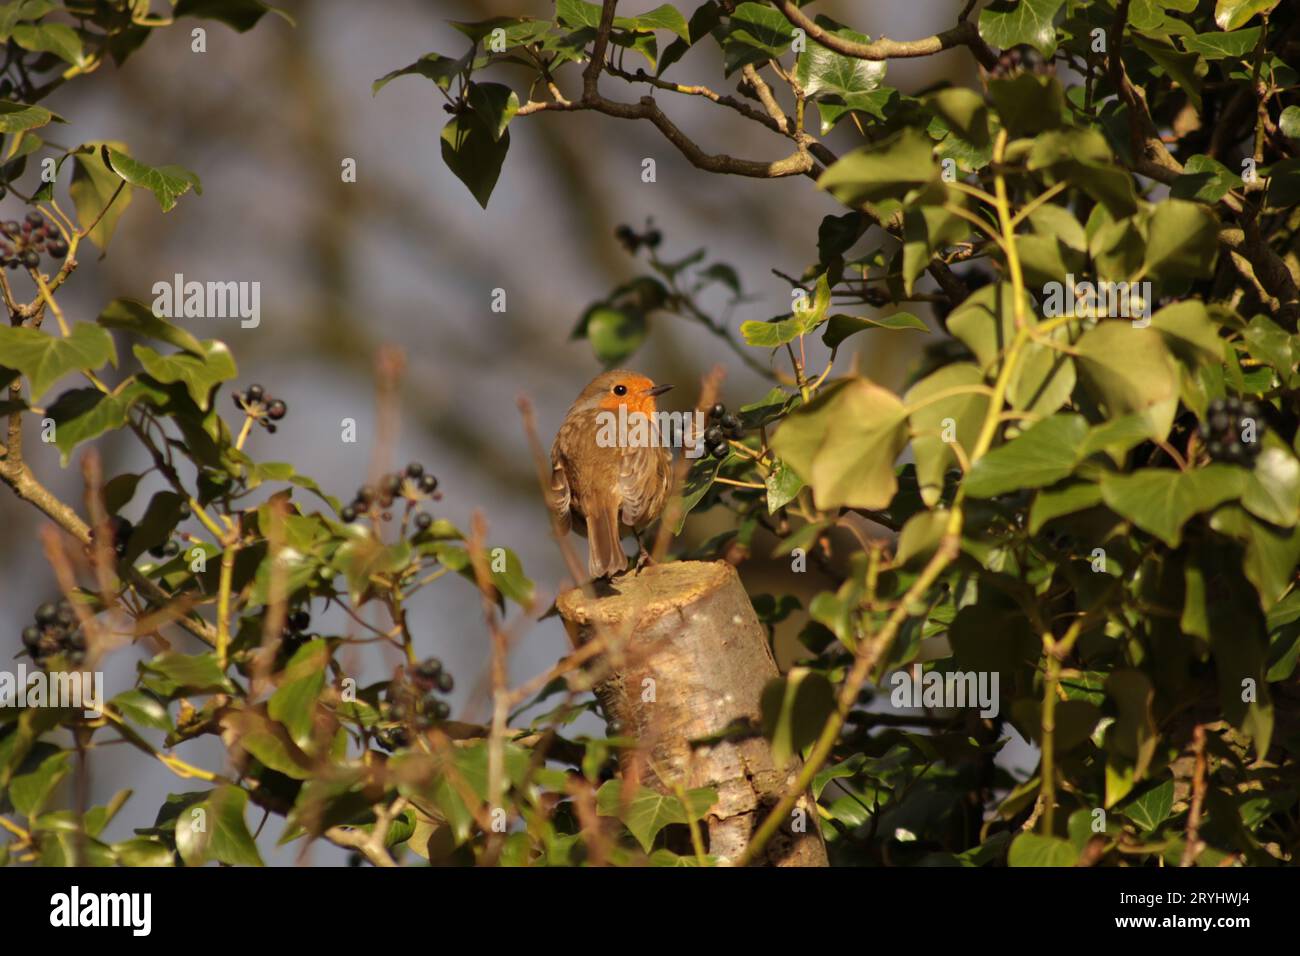 Ein sehr süßer Europäischer Rotbrust Vogel, saß auf einem gesägten Baumstamm, umgeben von grünem Efeu und dunklen Beeren im Sonnenschein. Stockfoto